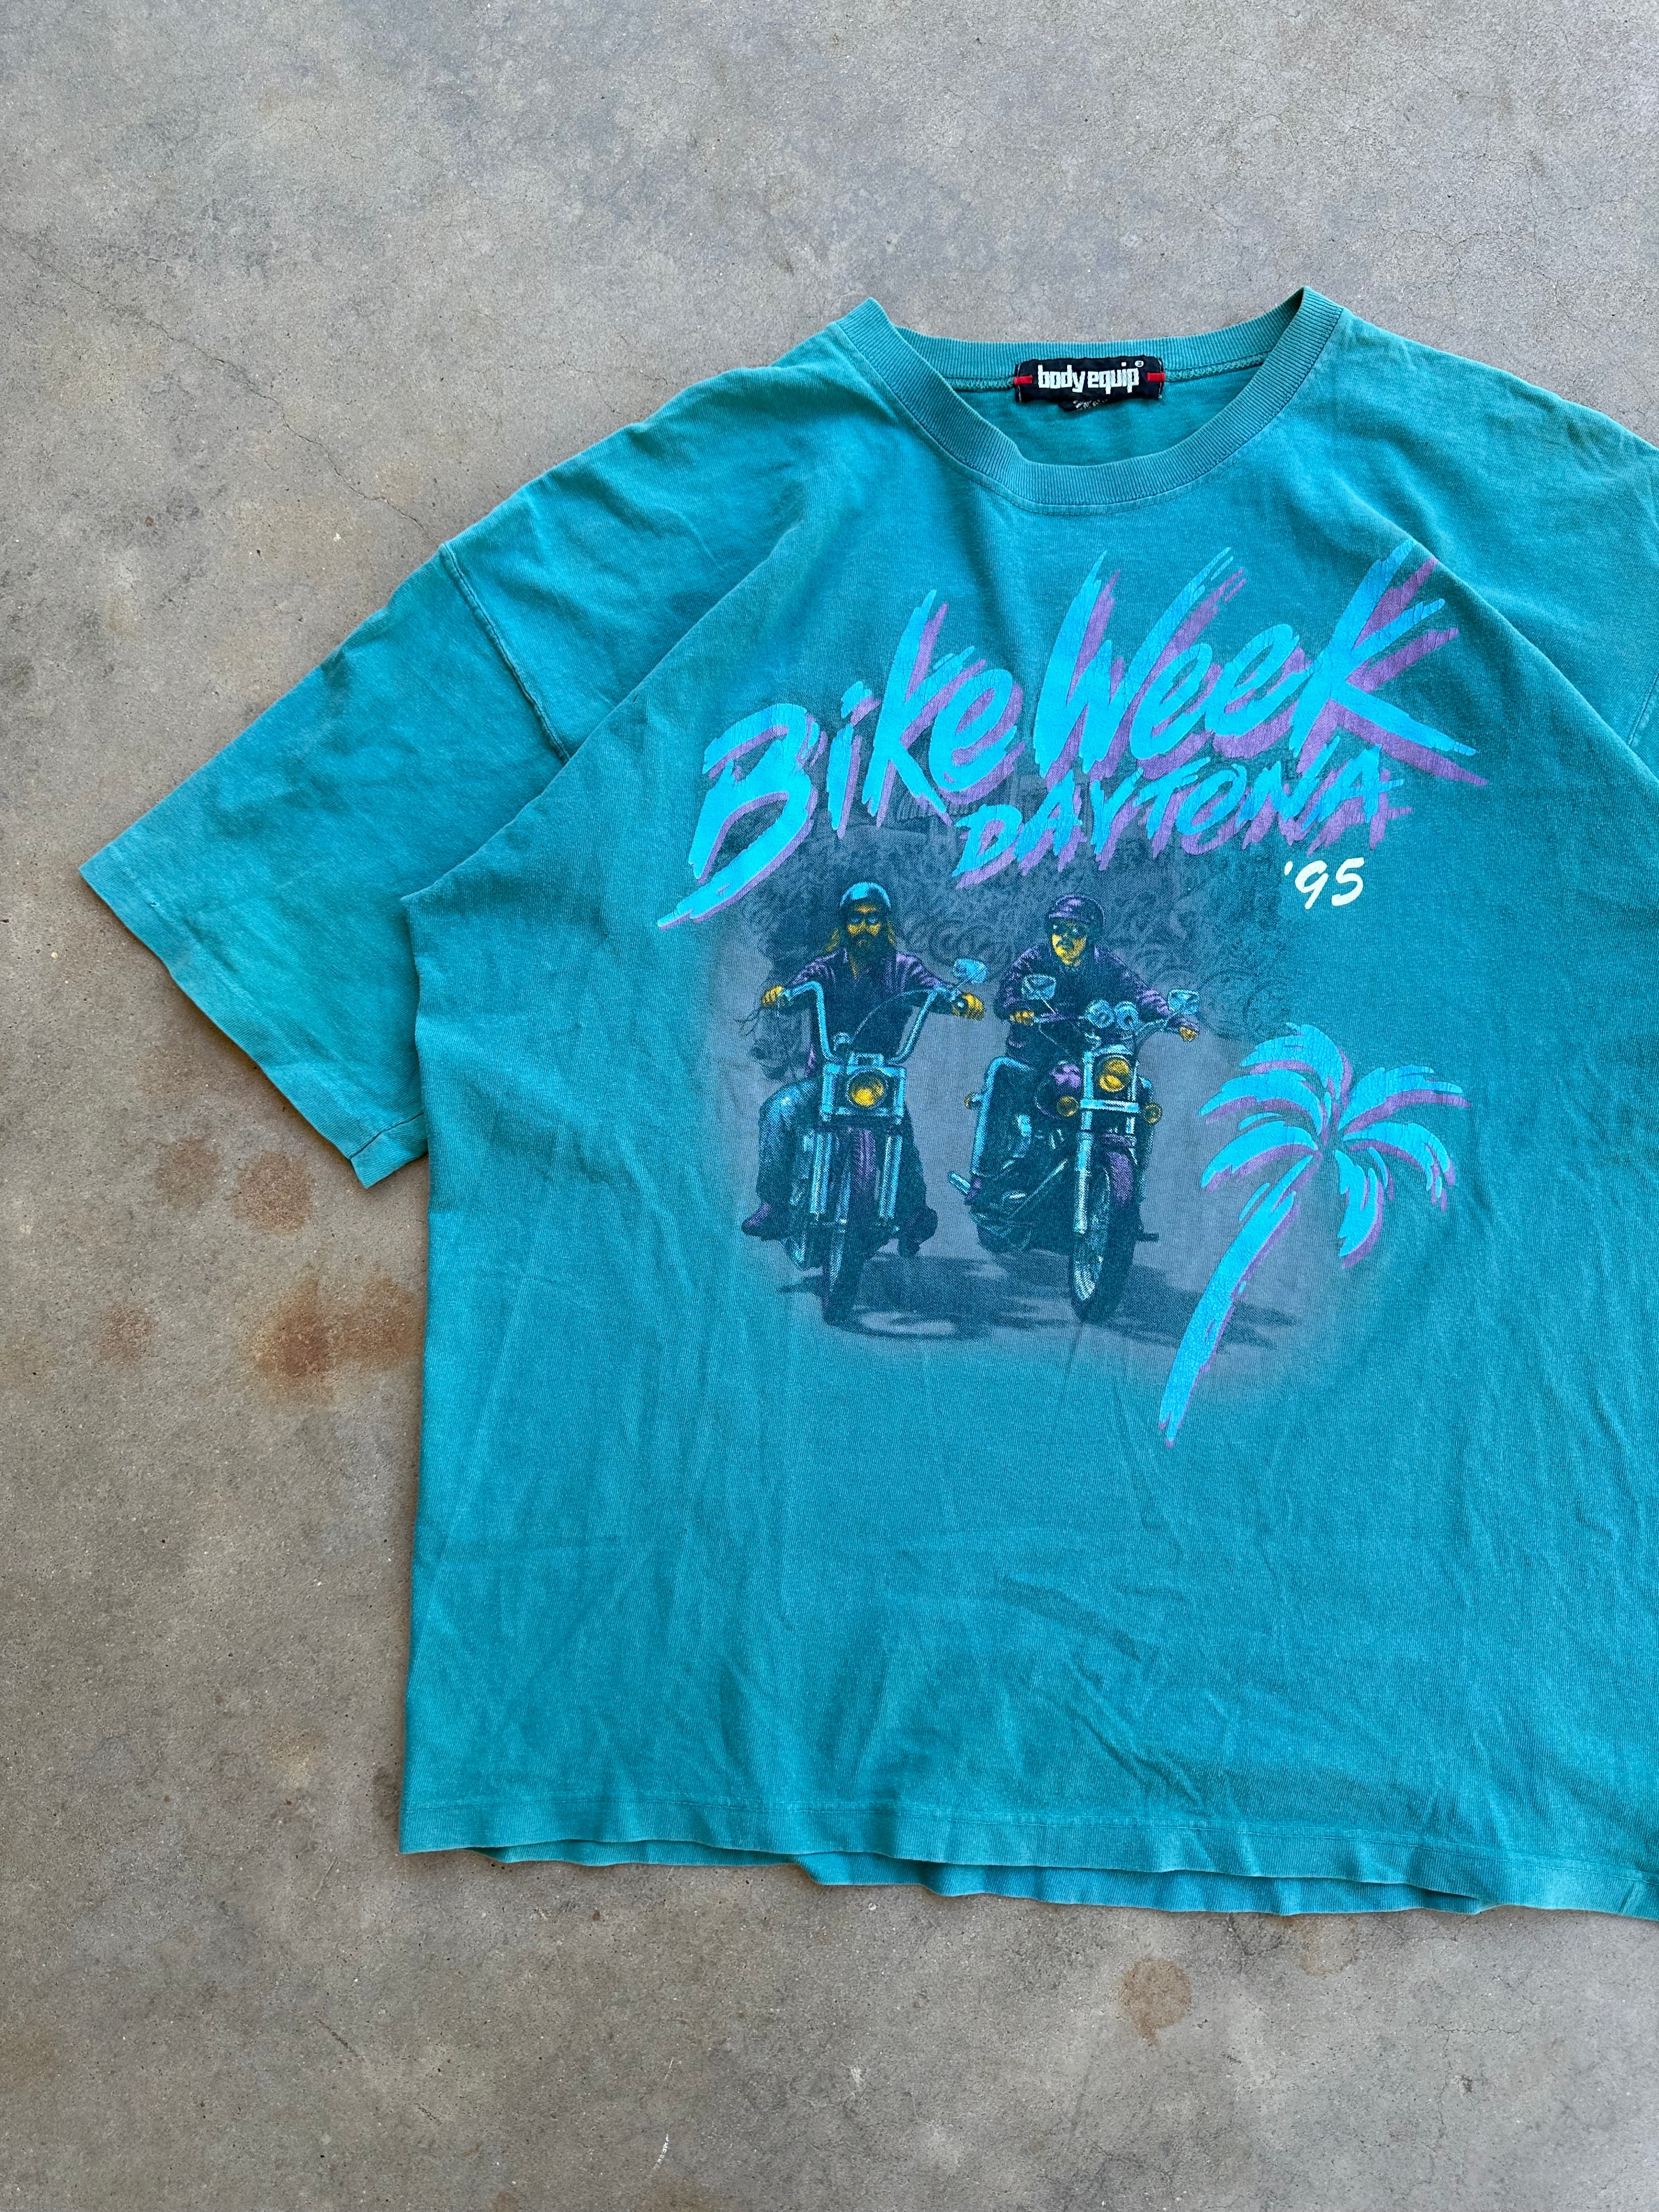 1995 Daytona Bike Week Boxy T-Shirt (XL)